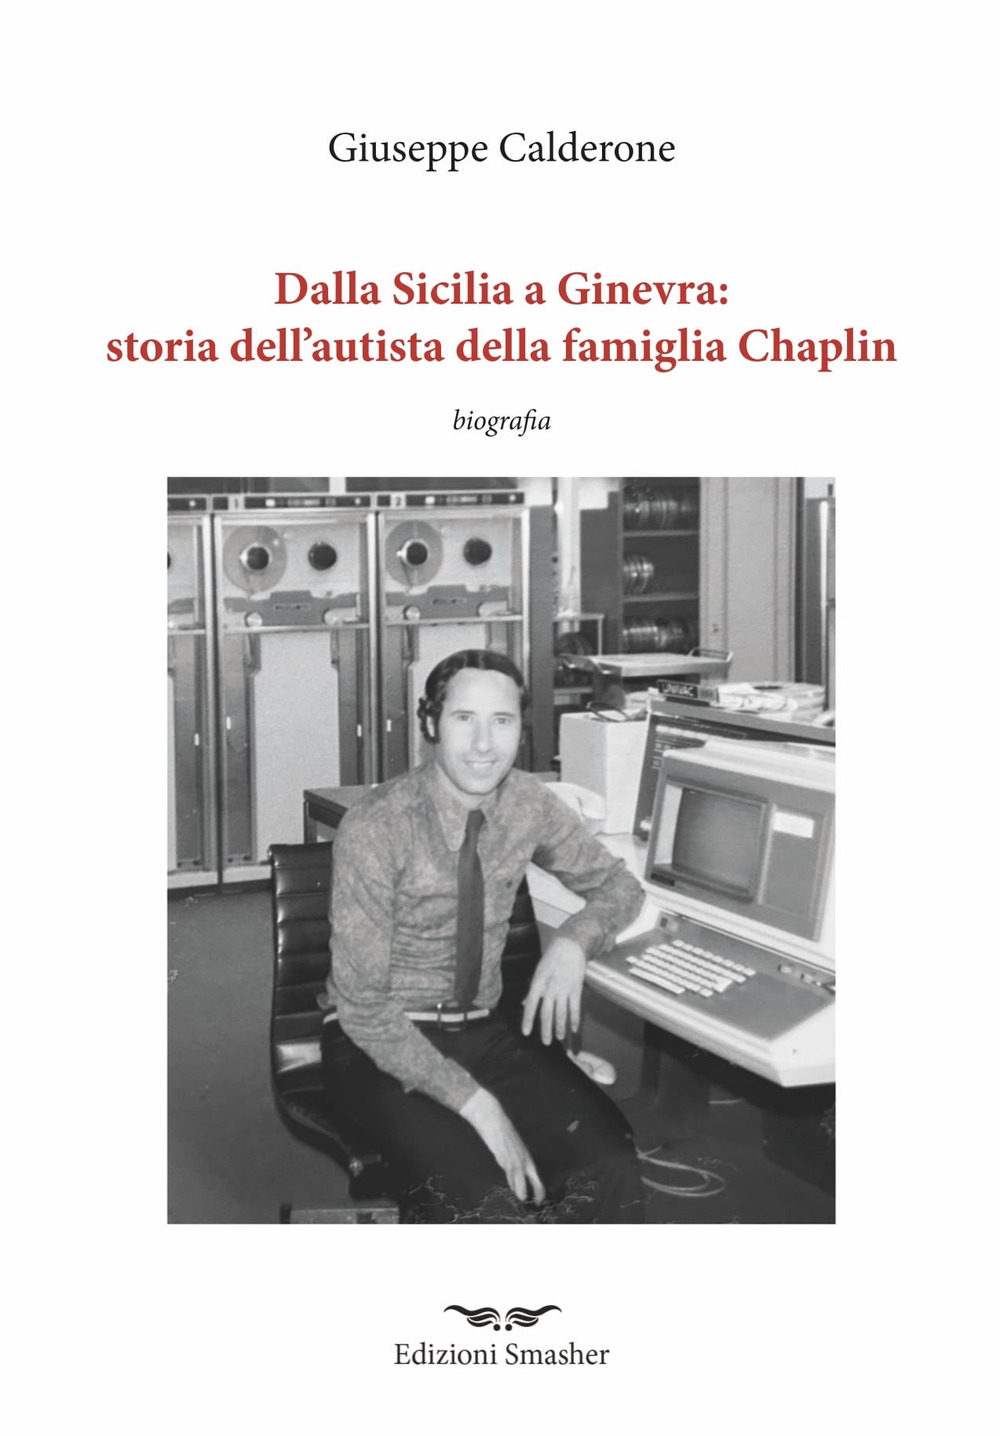 Dalla Sicilia a Ginevra: storia dell'autista della famiglia di Chaplin